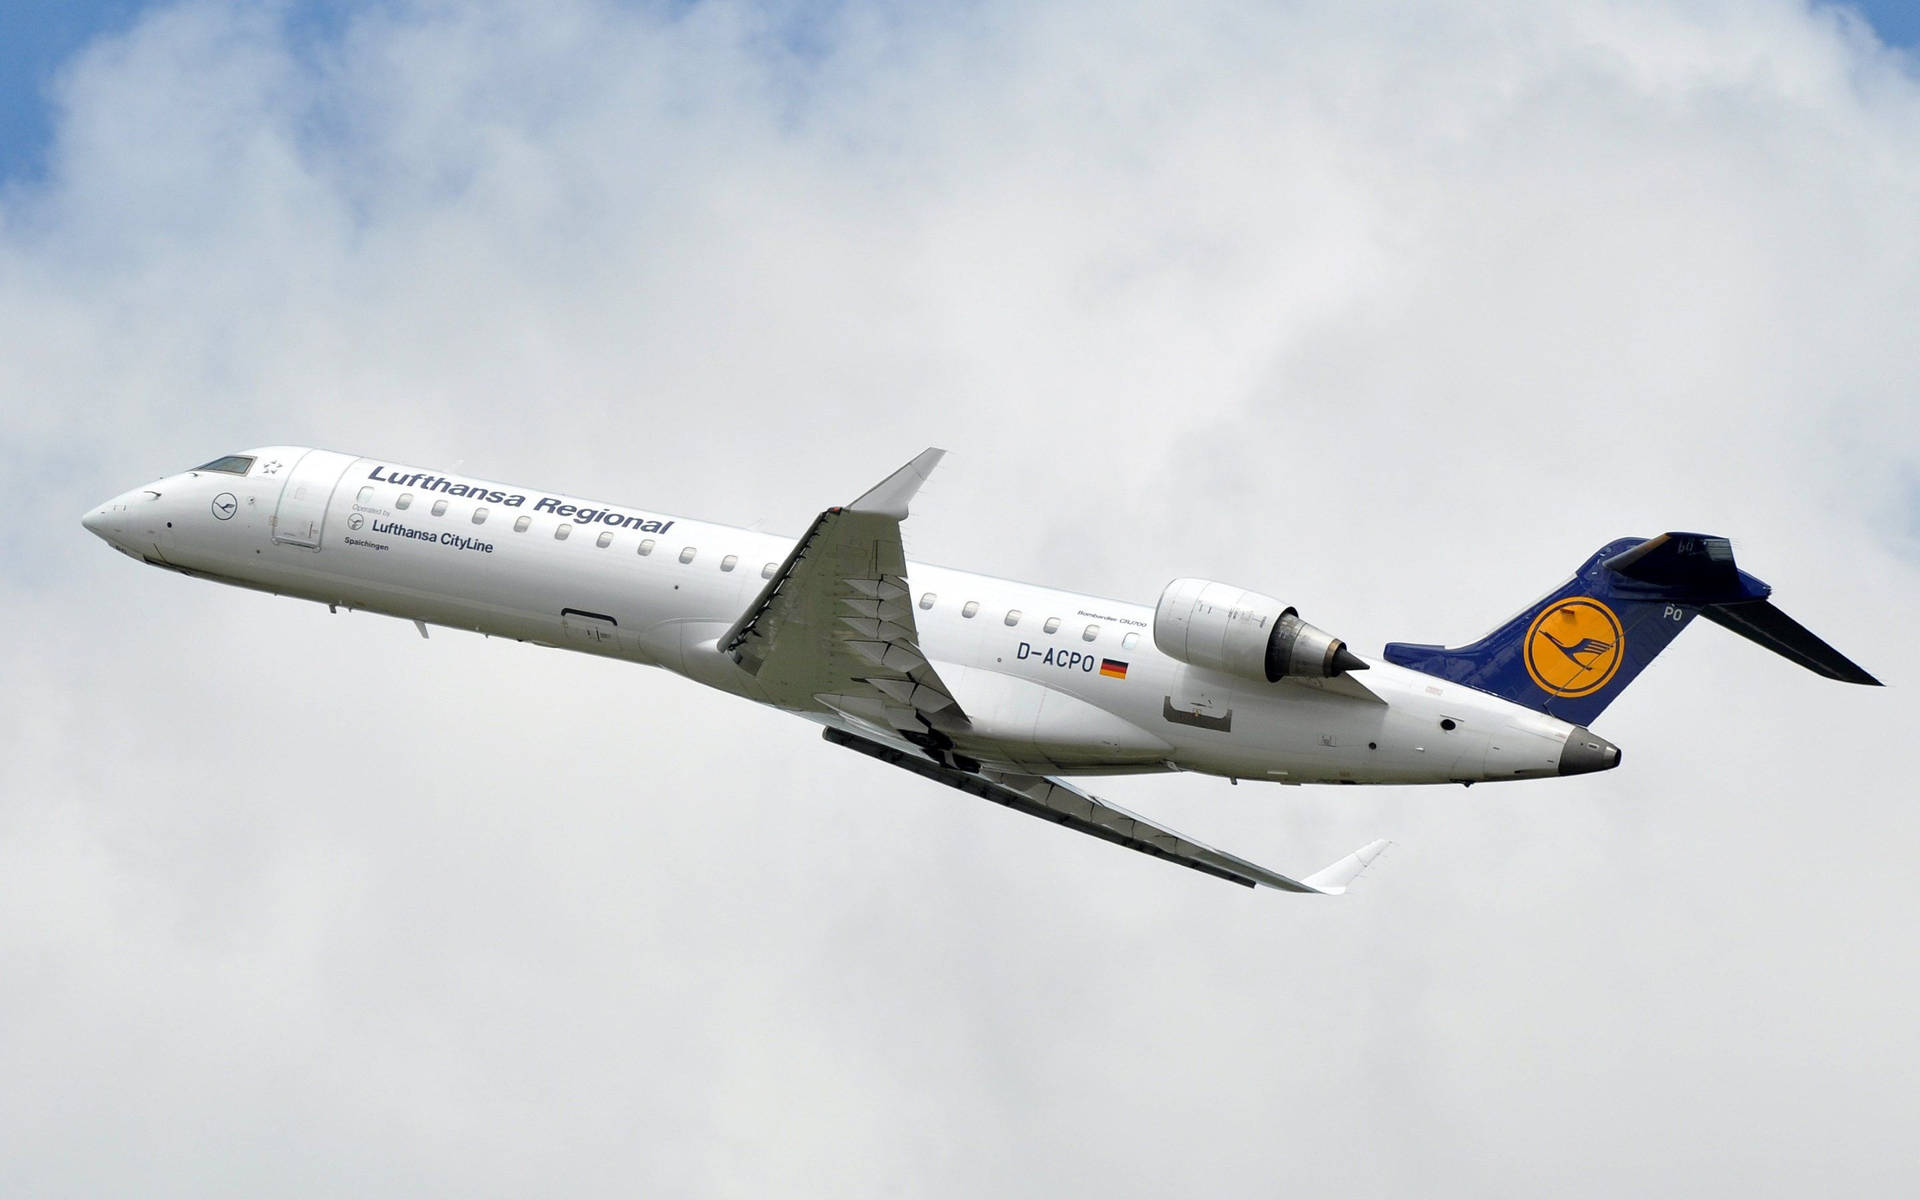 Luftfartøj fra Lufthansa blandt bomuldskyer. Wallpaper